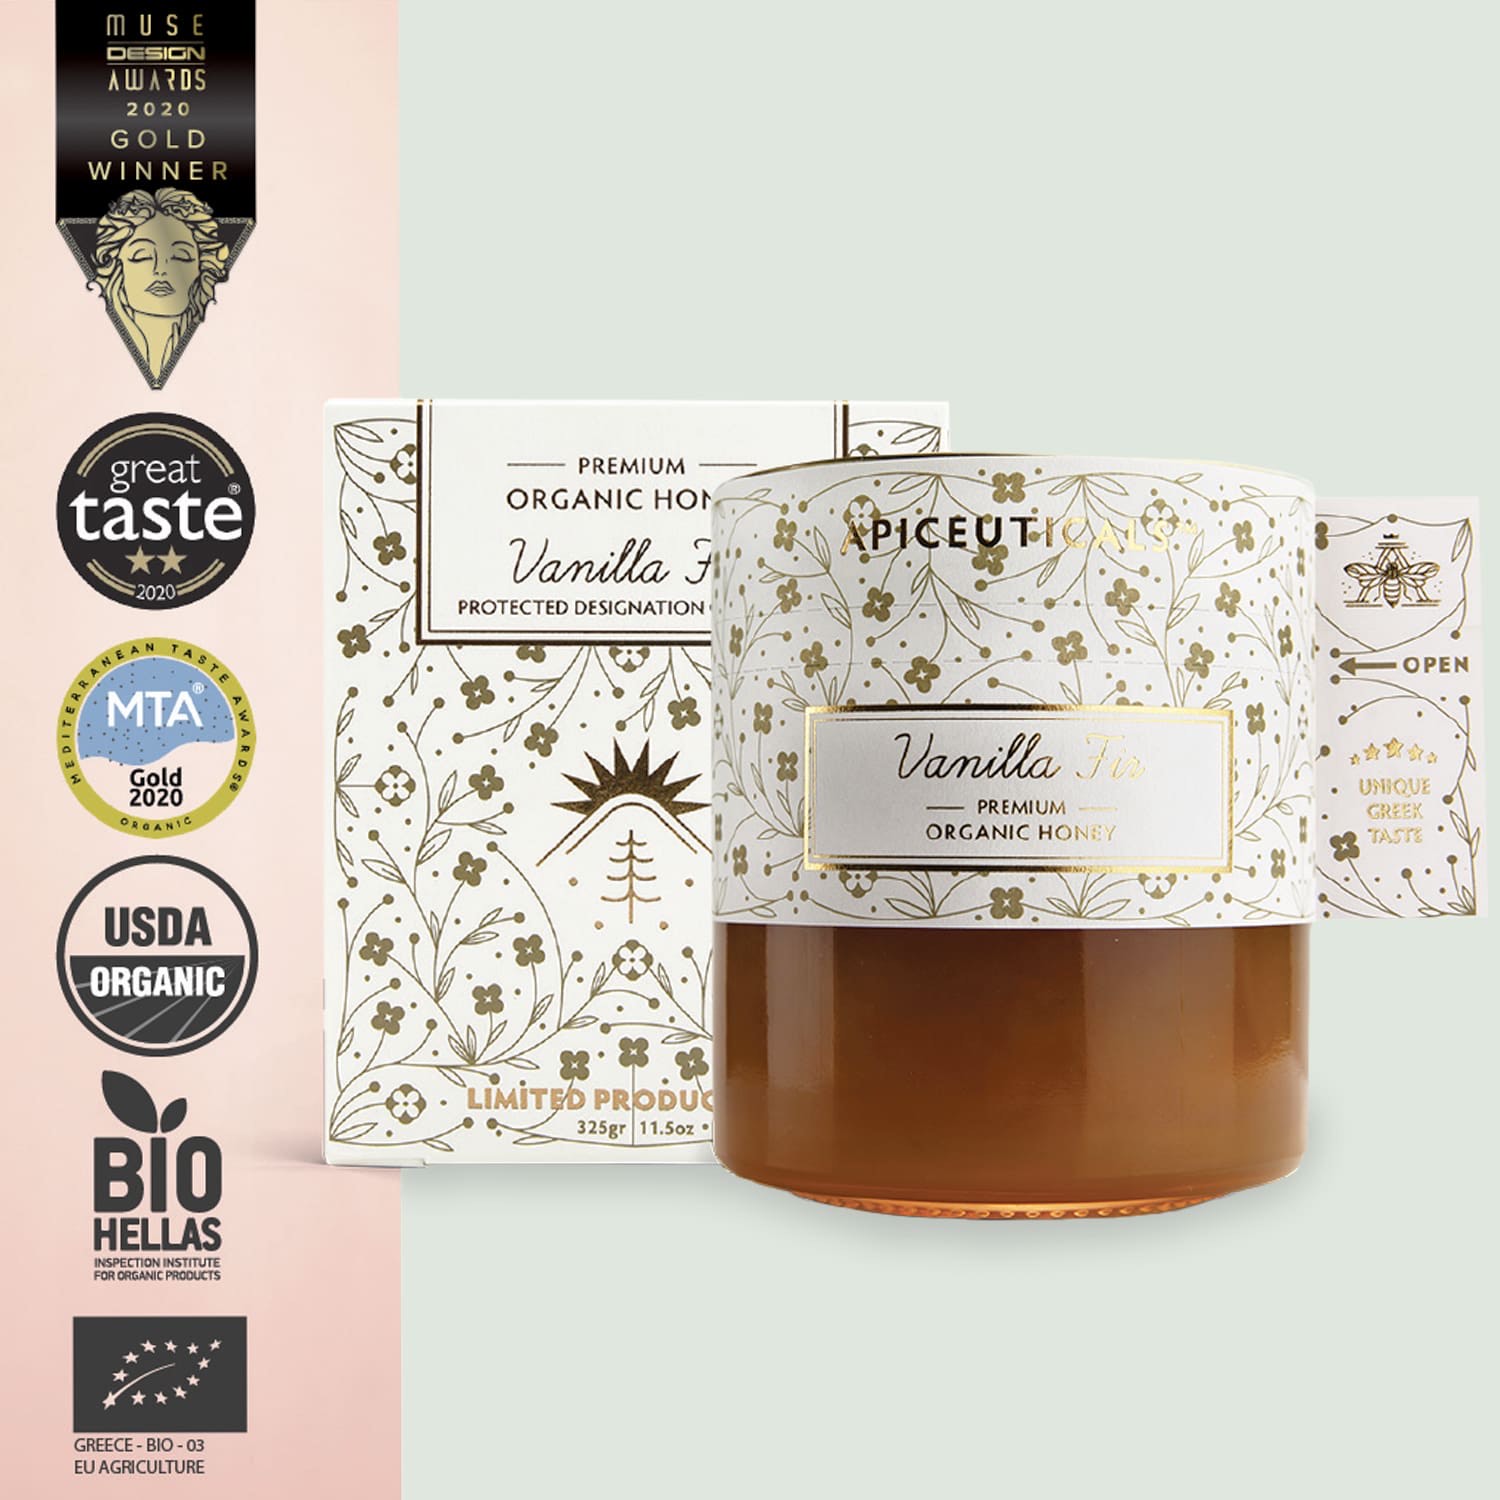 Apiceautical’s Vanilla Fir Premium Organic Honey